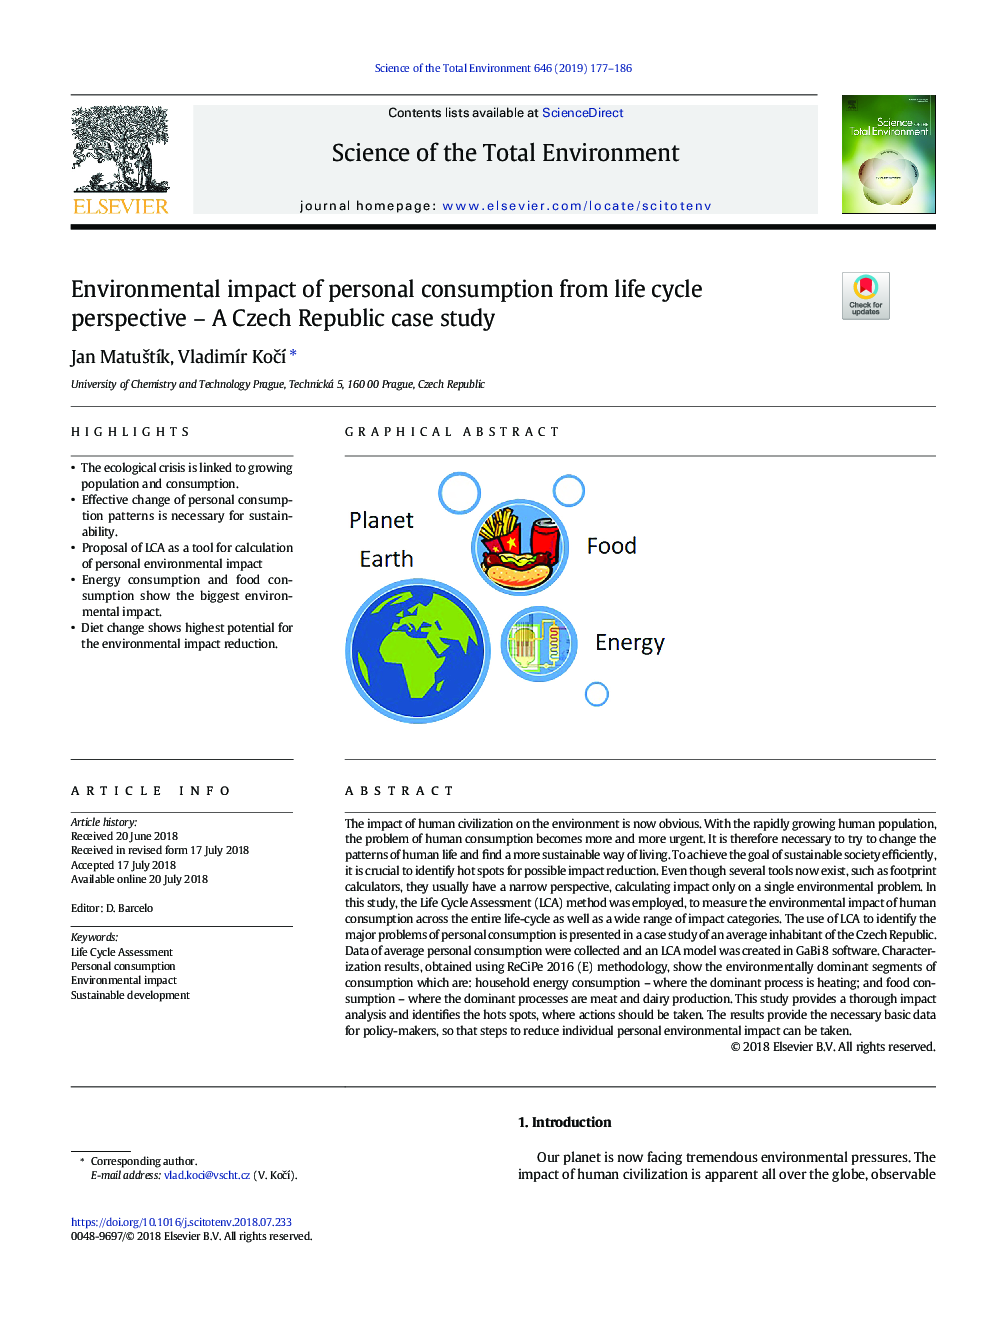 تاثیرات زیست محیطی مصرف شخصی از دیدگاه چرخه زندگی - مطالعه موردی جمهوری چک